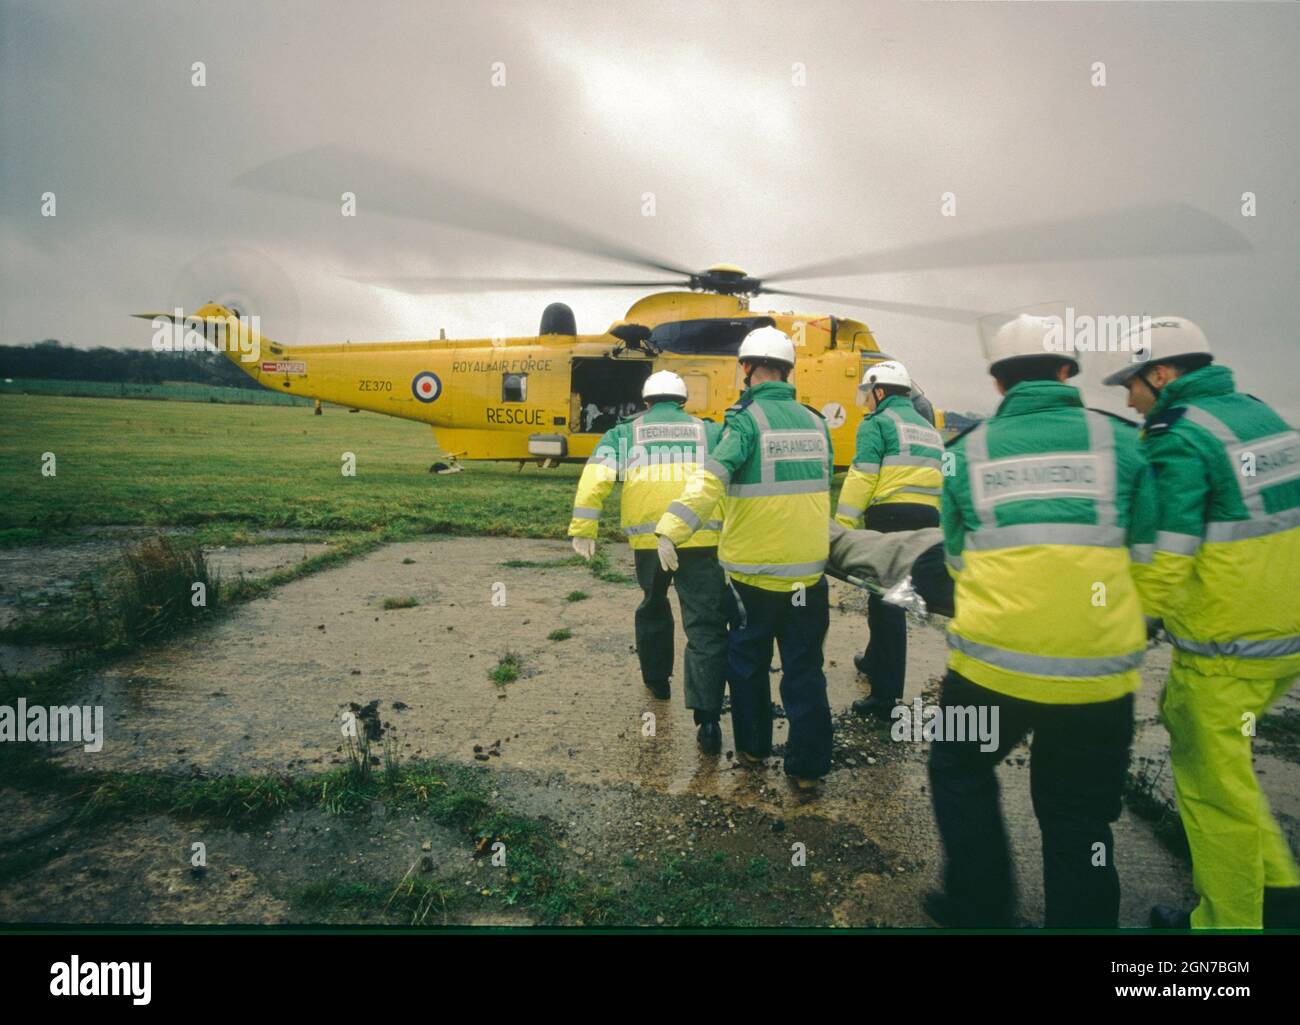 Paramedici barella un passeggero simulato ferito a un elicottero in attesa durante un esercizio di difesa civile. Foto Stock